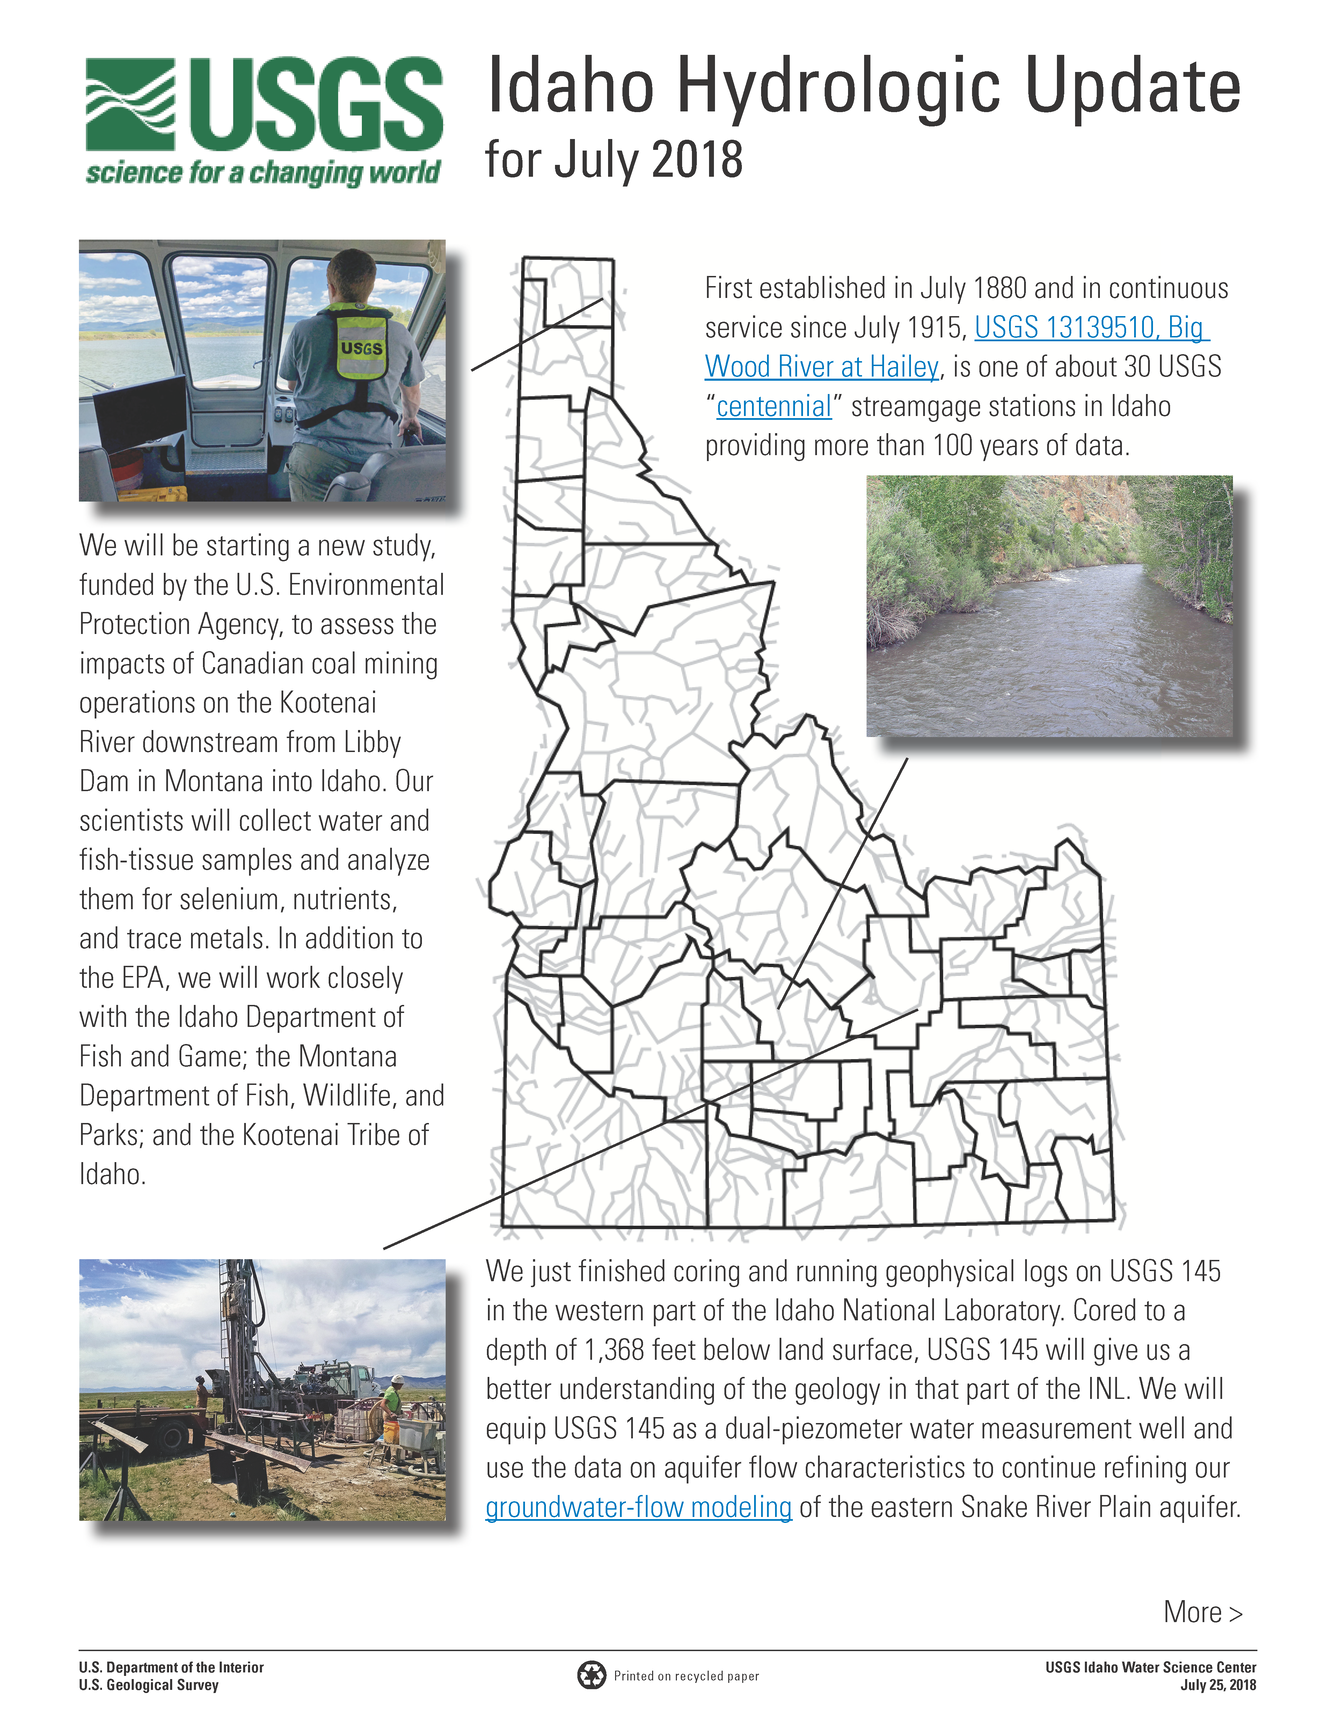 Idaho Hydrologic Update, July 2018